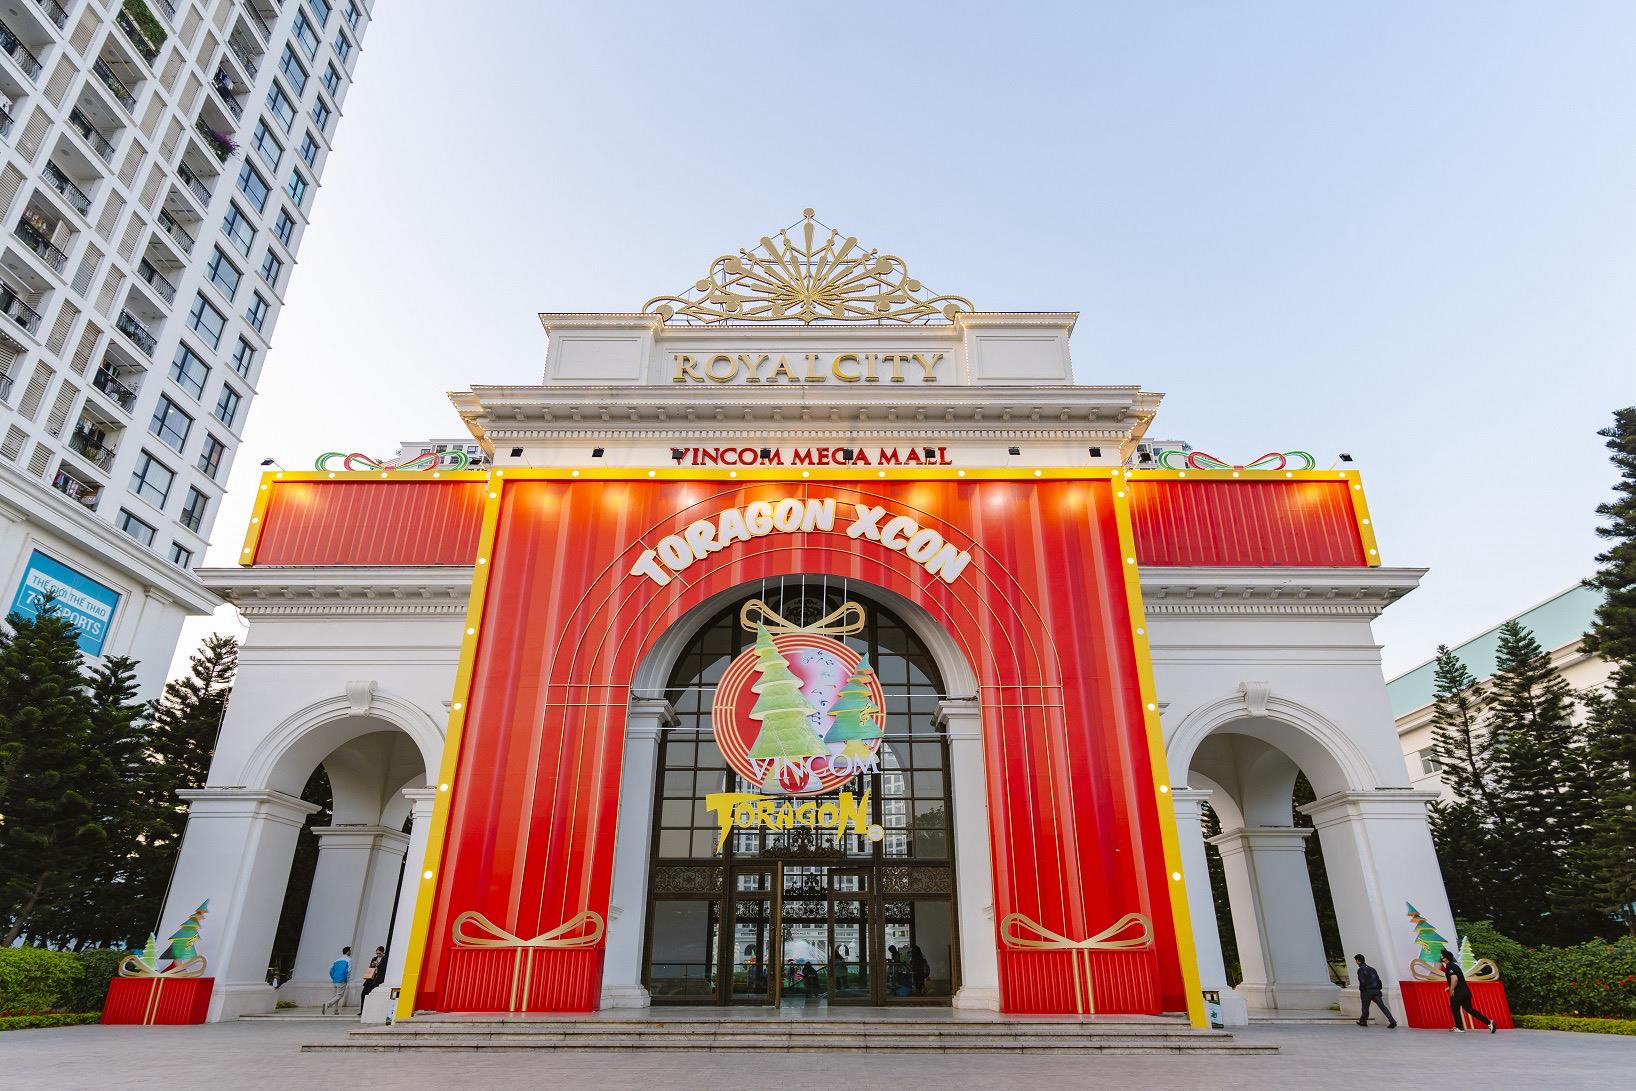 Loạt trải nghiệm thú vị tại Hội chợ Art toy Giáng sinh độc đáo tại Việt Nam - Ảnh 1.